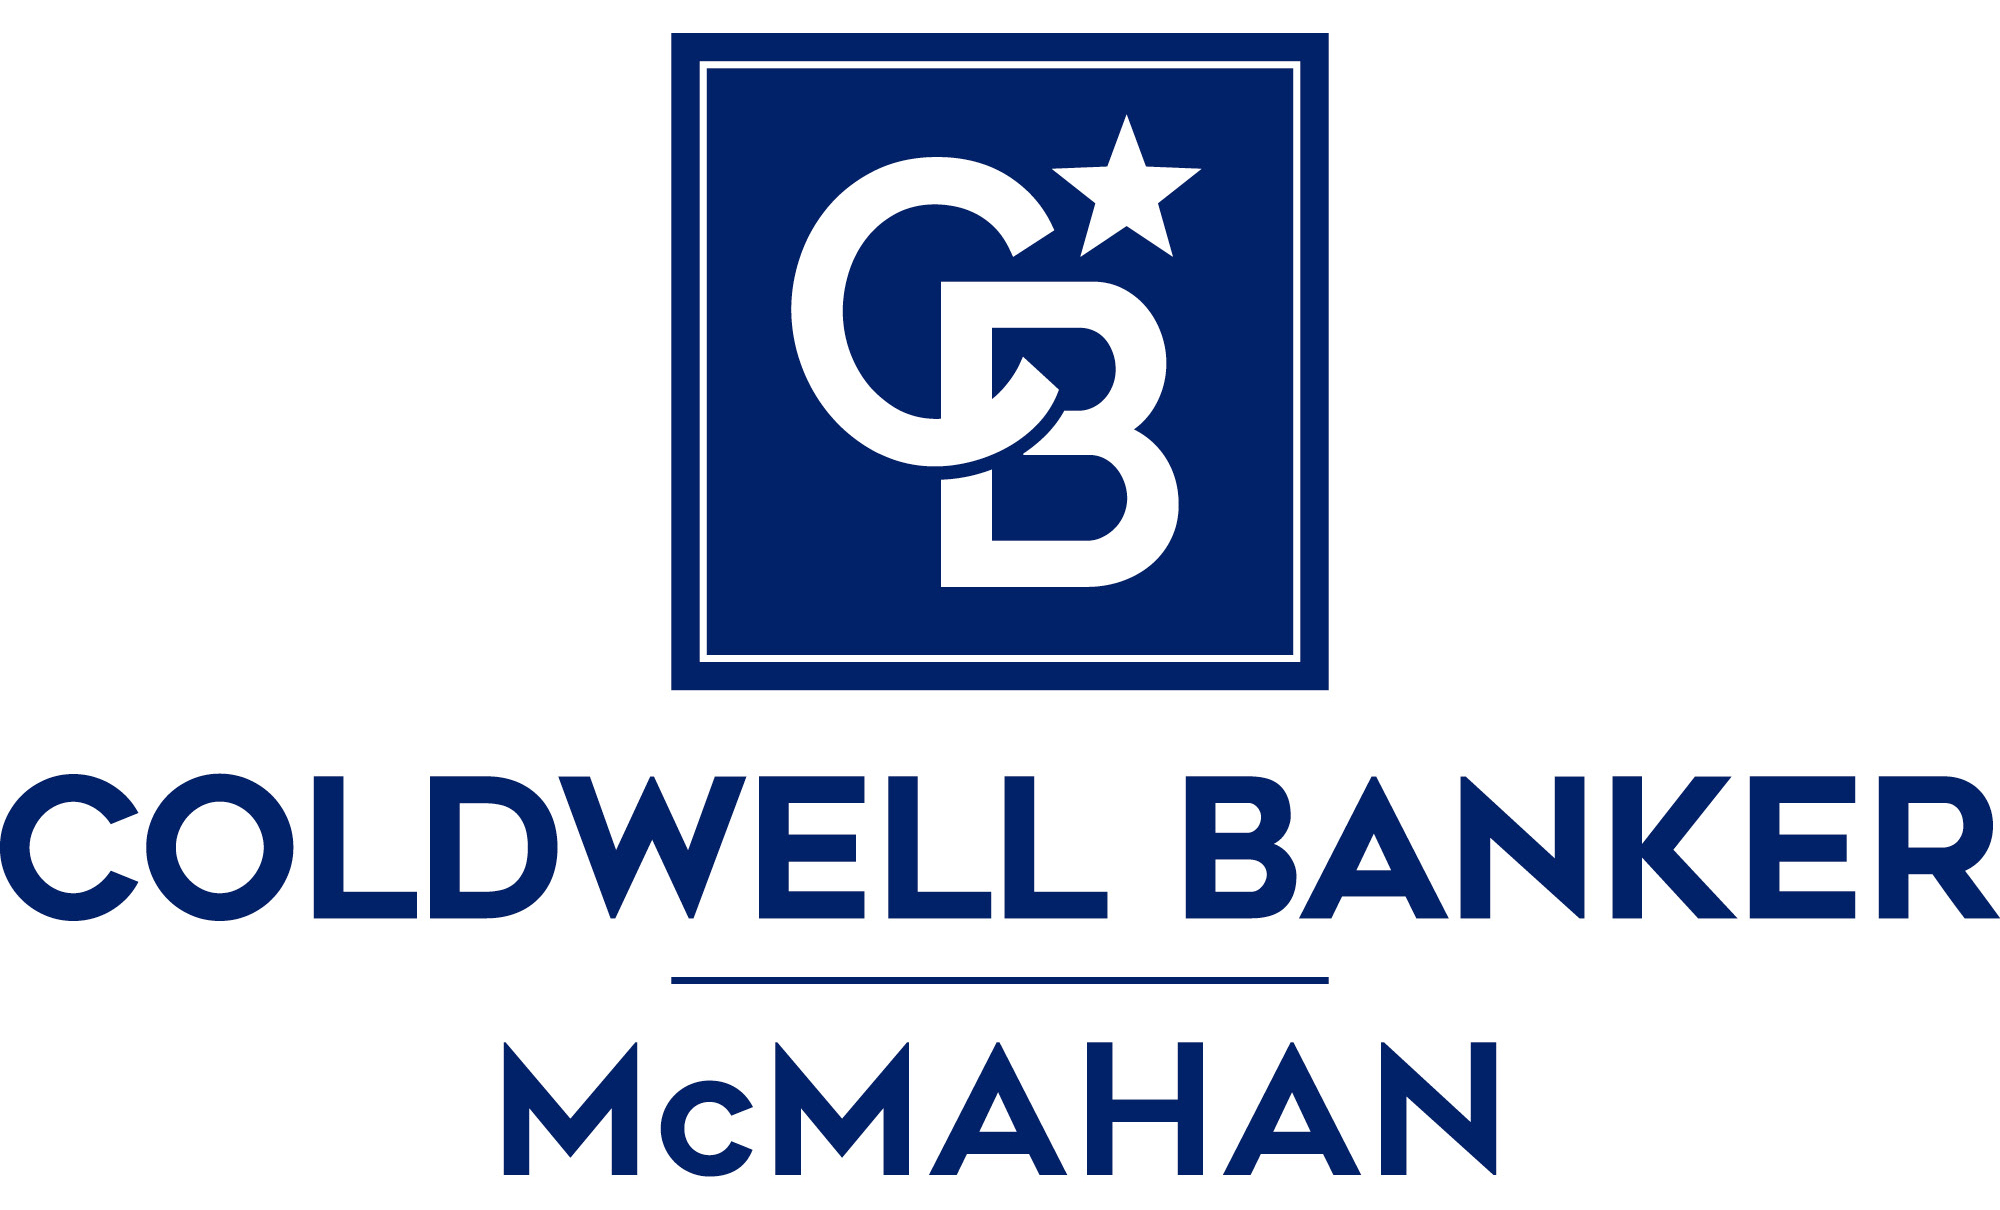 Chris OBryan - Coldwell Banker McMahan Logo